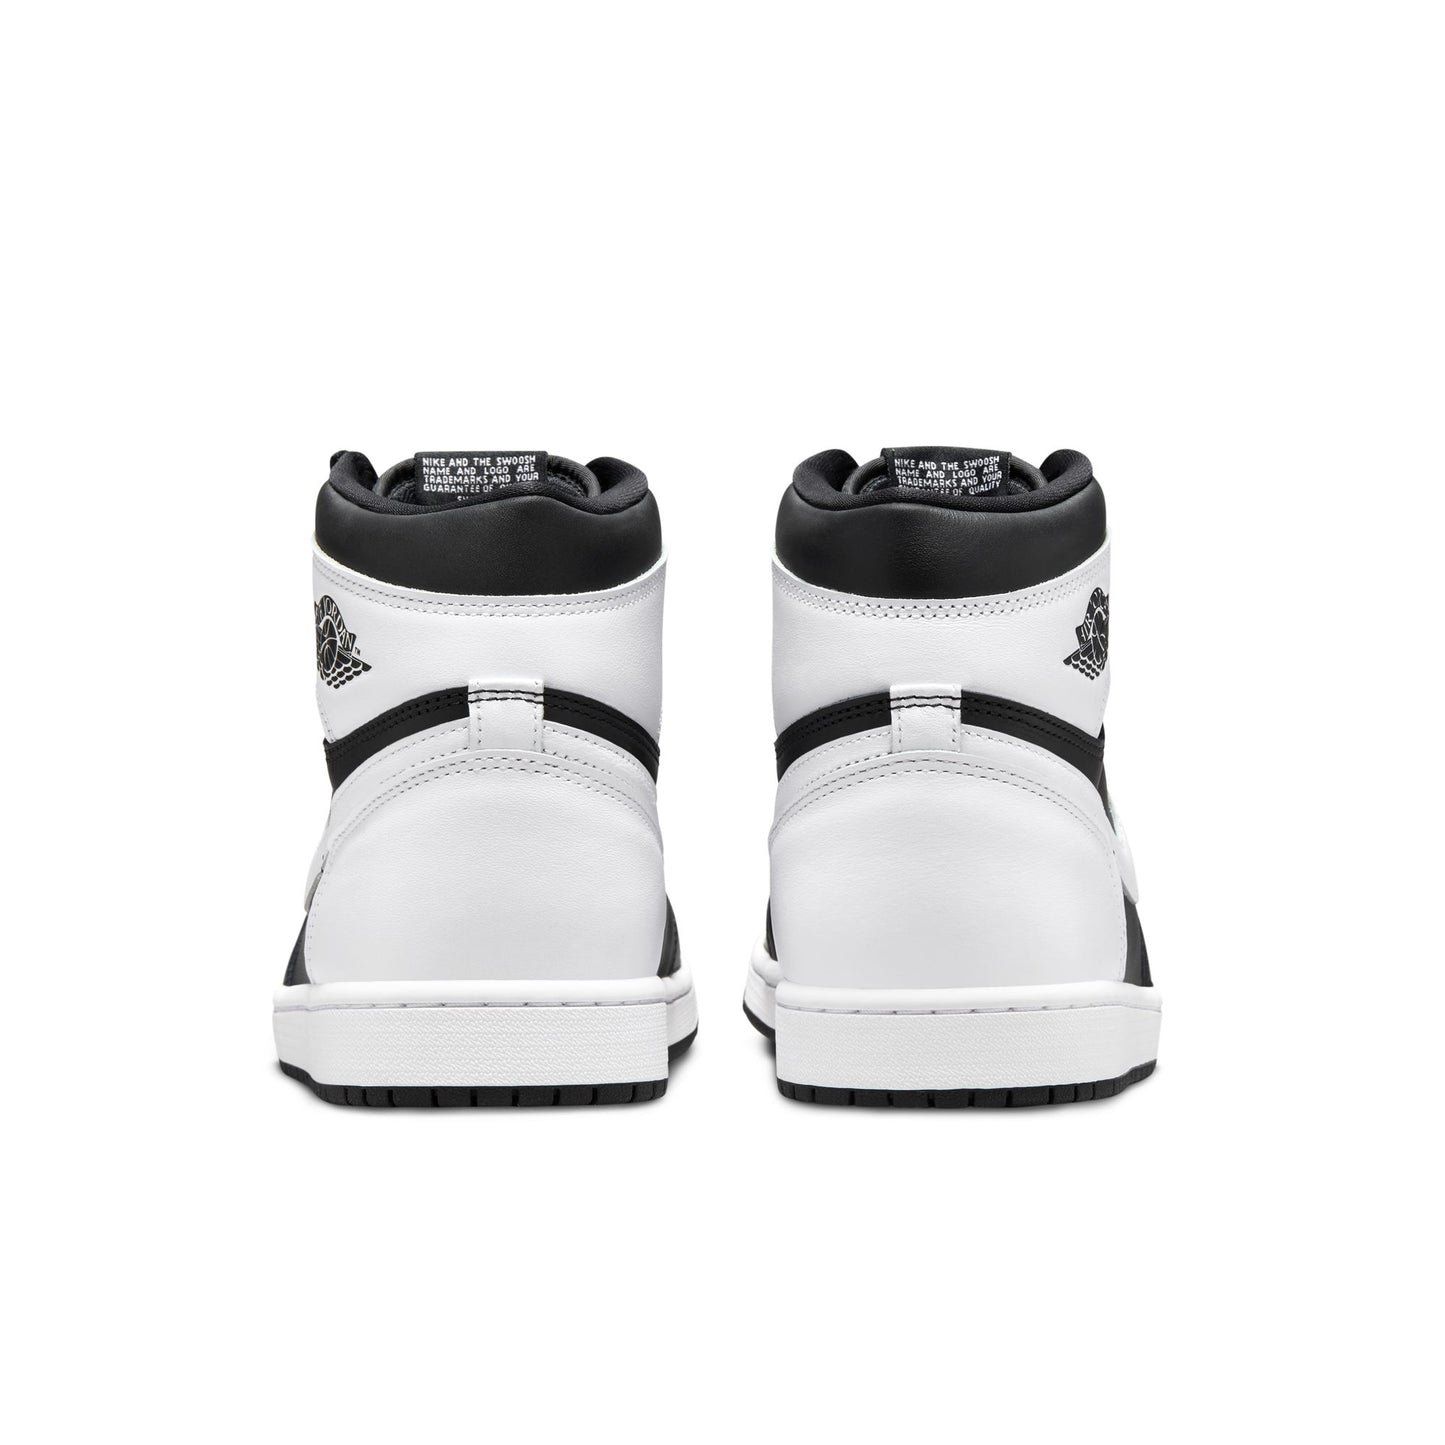 Air Jordan 1 Retro High OG "Black/White" - DZ5485-010